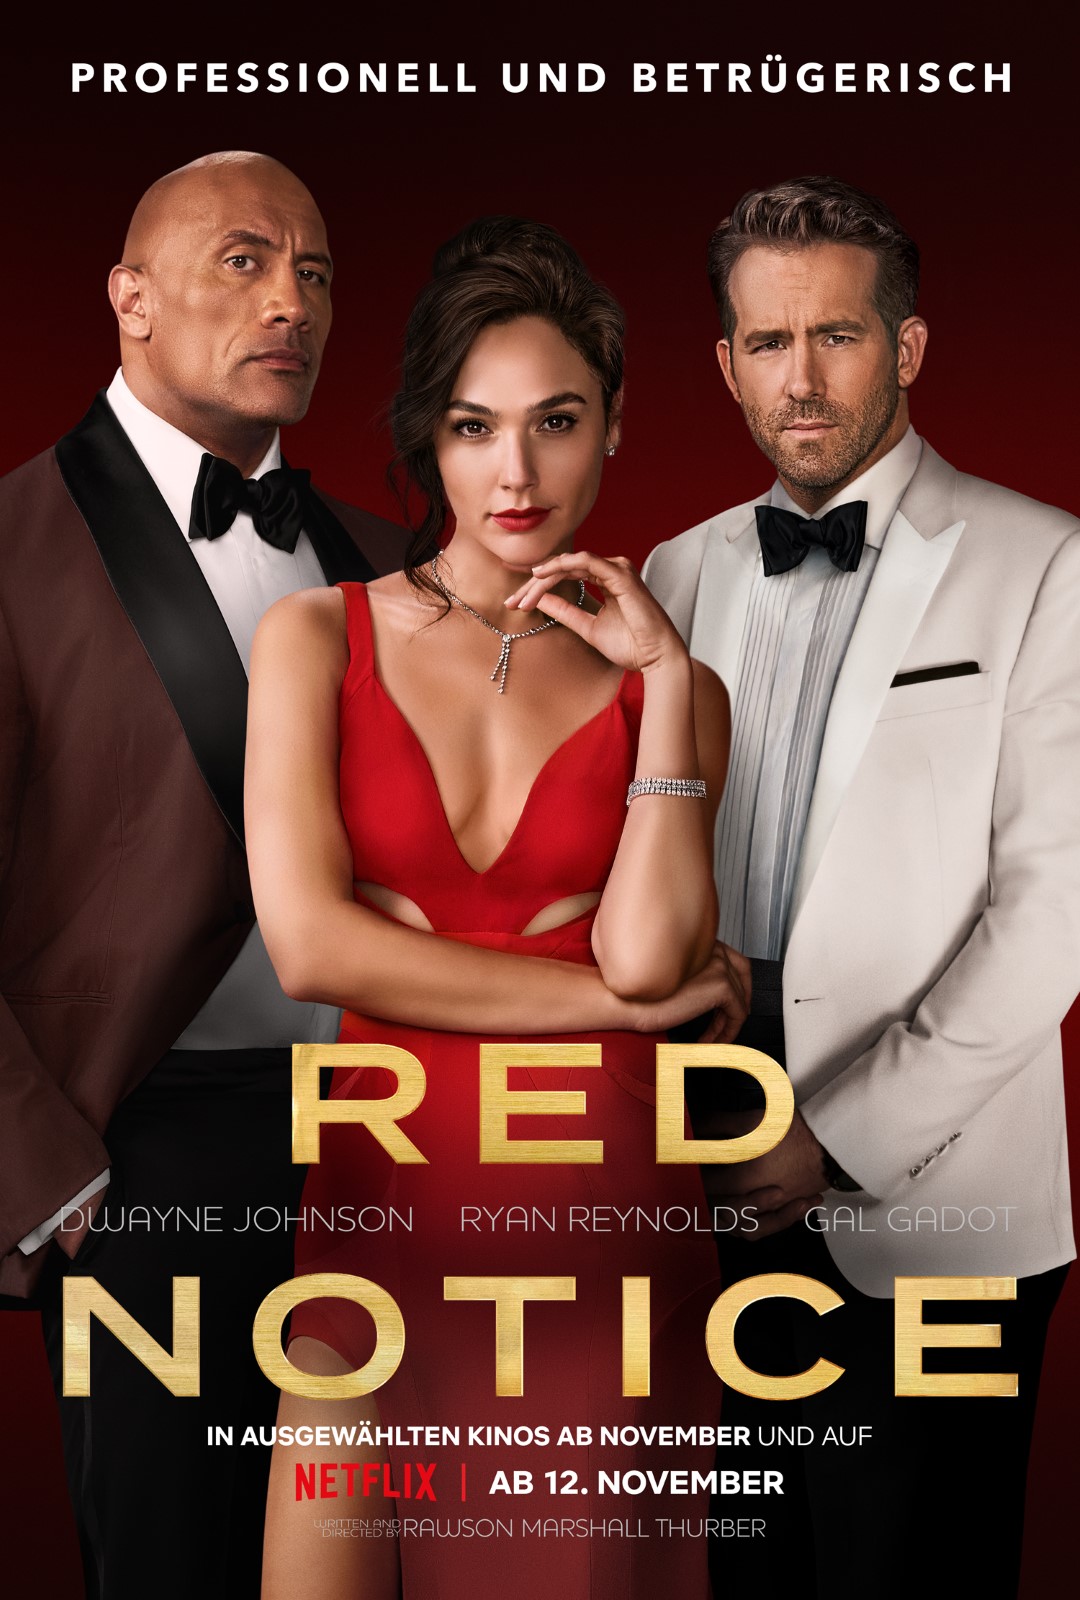 Ryan Reynolds im weissen Smoking und schwarzer Hose, Gal Gadot im roten Kleid und Dwayne Johnson in schwarzer Abendgarderobe auf dem Plakat zu Red Notice